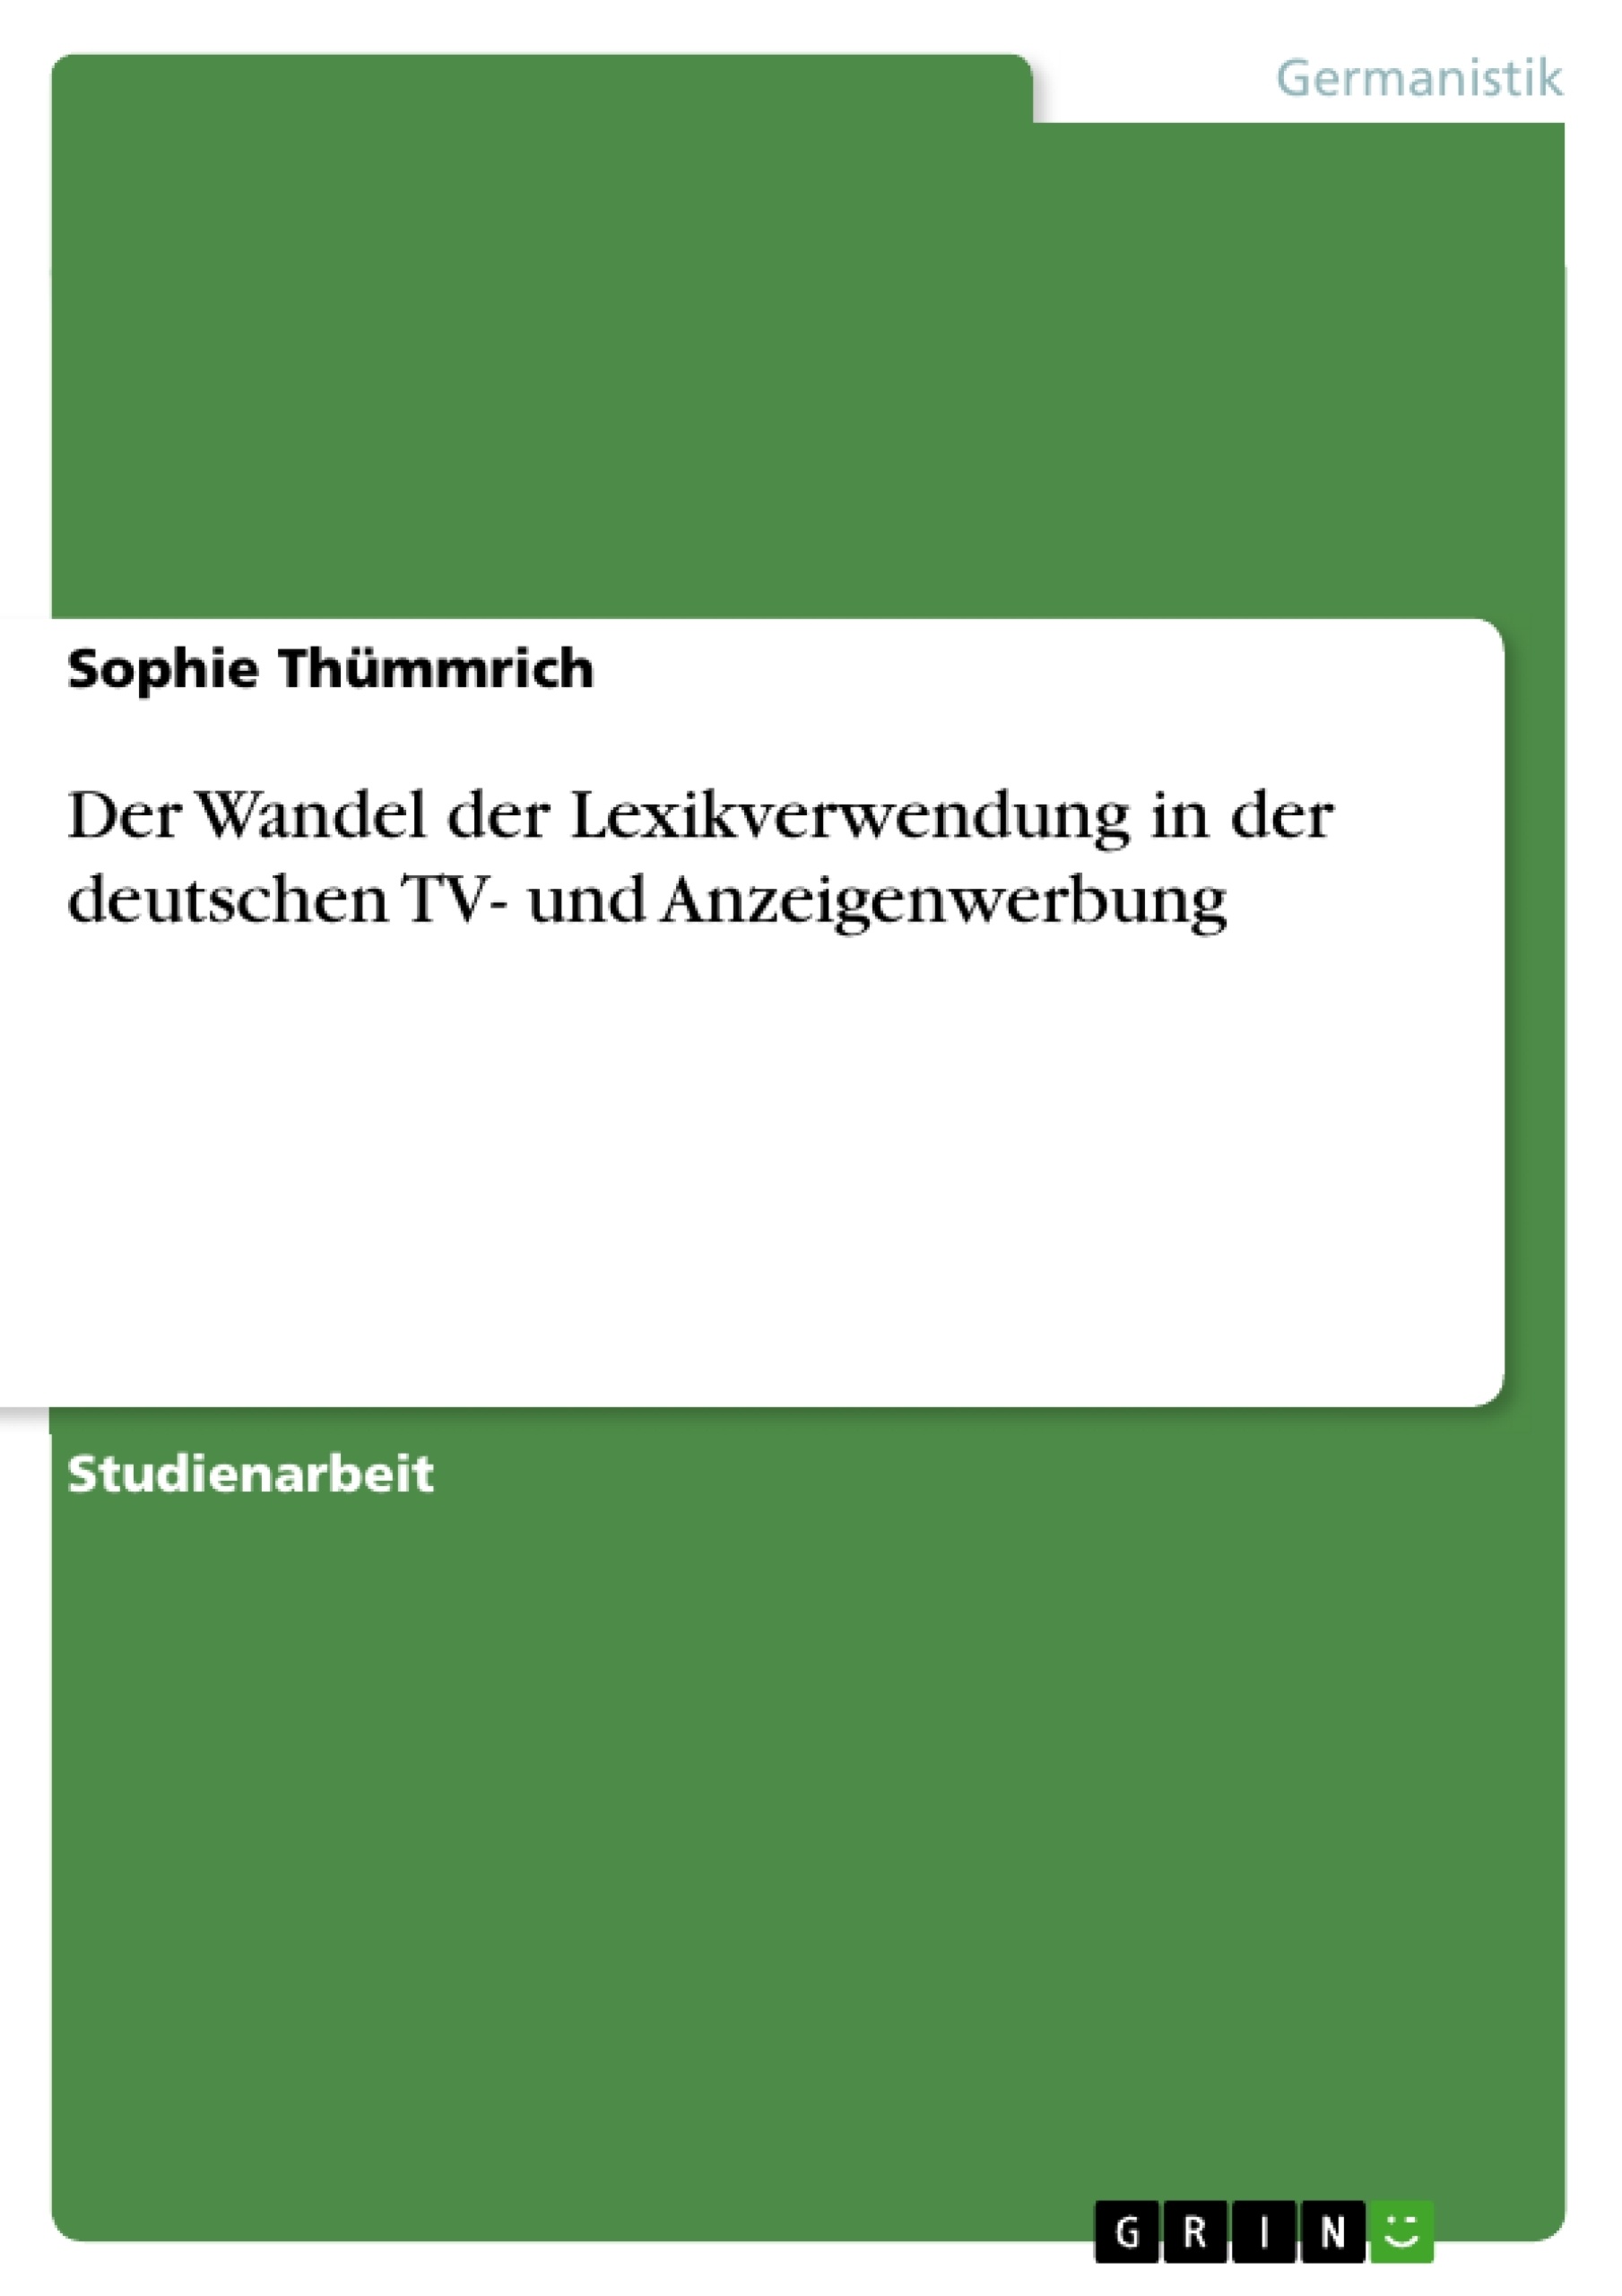 Título: Der Wandel der Lexikverwendung in der deutschen TV- und Anzeigenwerbung